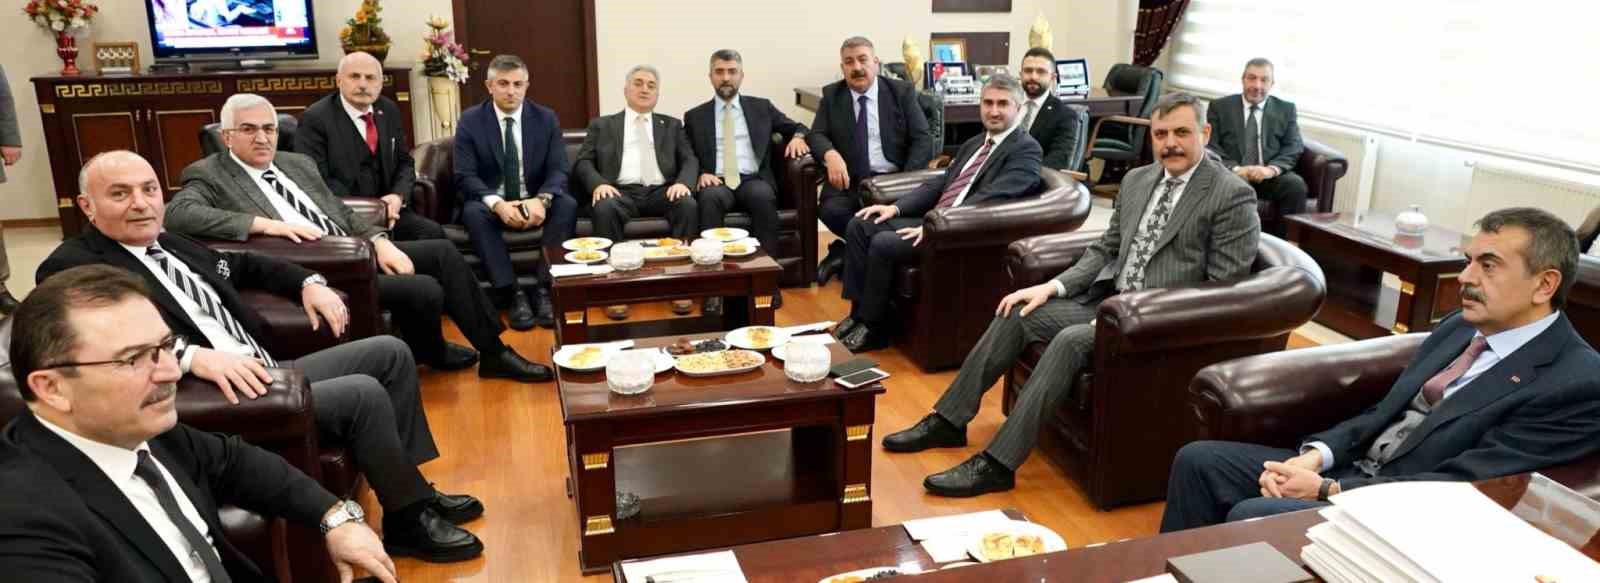 Milli Eğitim Bakanı Tekin, Erzurum’da ‘Maarif Buluşmaları’na katıldı
